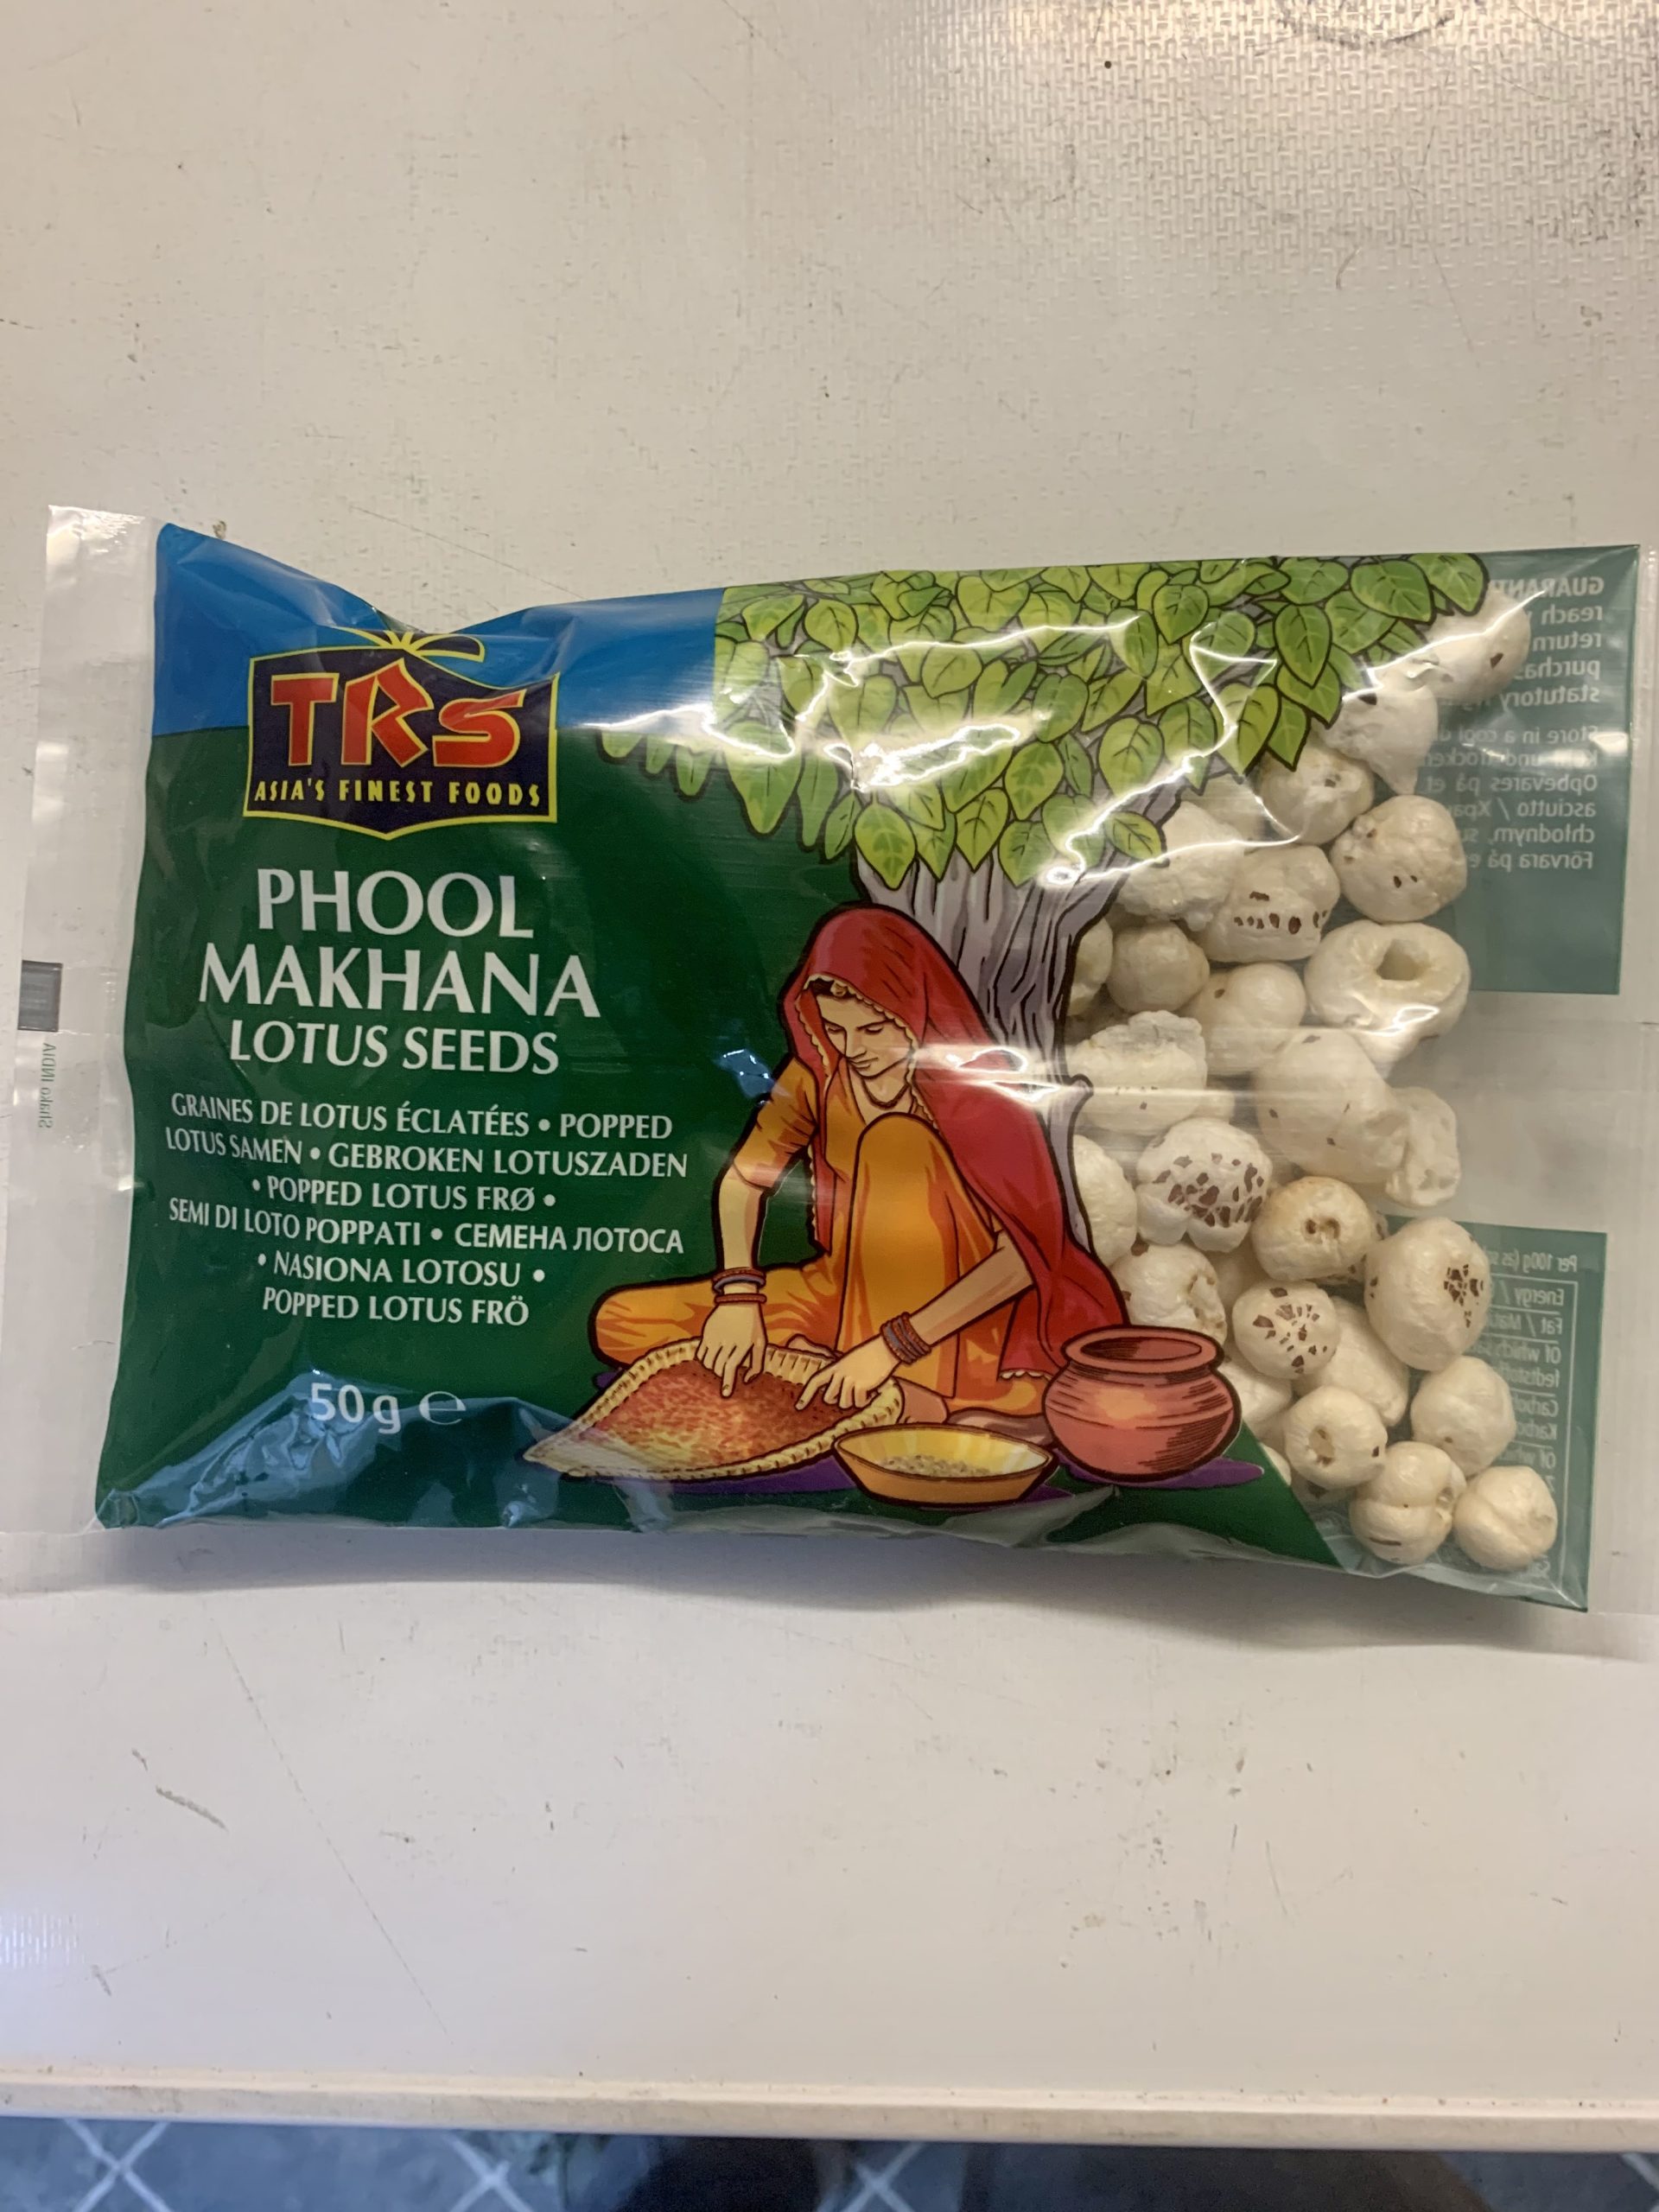 TRS Phool Makhana 50g Lotus seeds